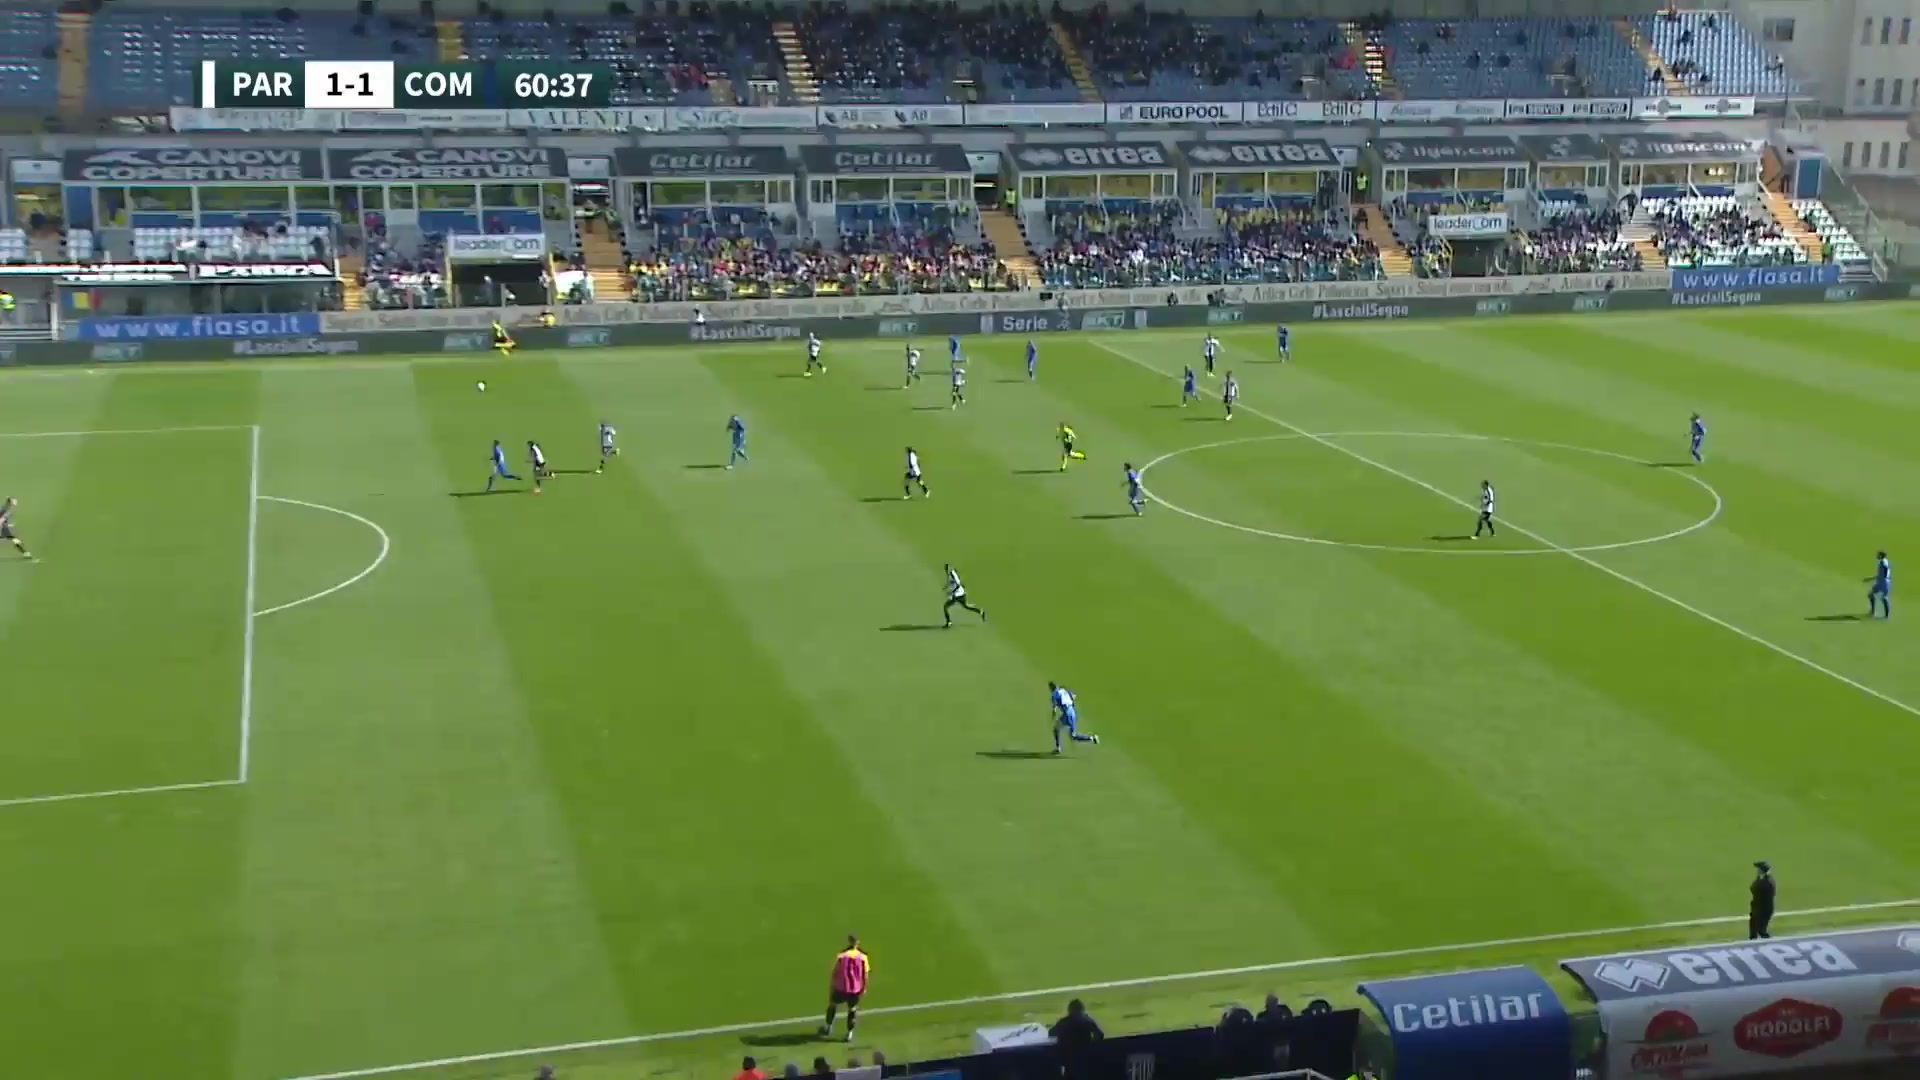 ITA D2 Parma Vs Como Ettore Gliozzi Goal in 60 min, Score 1:1